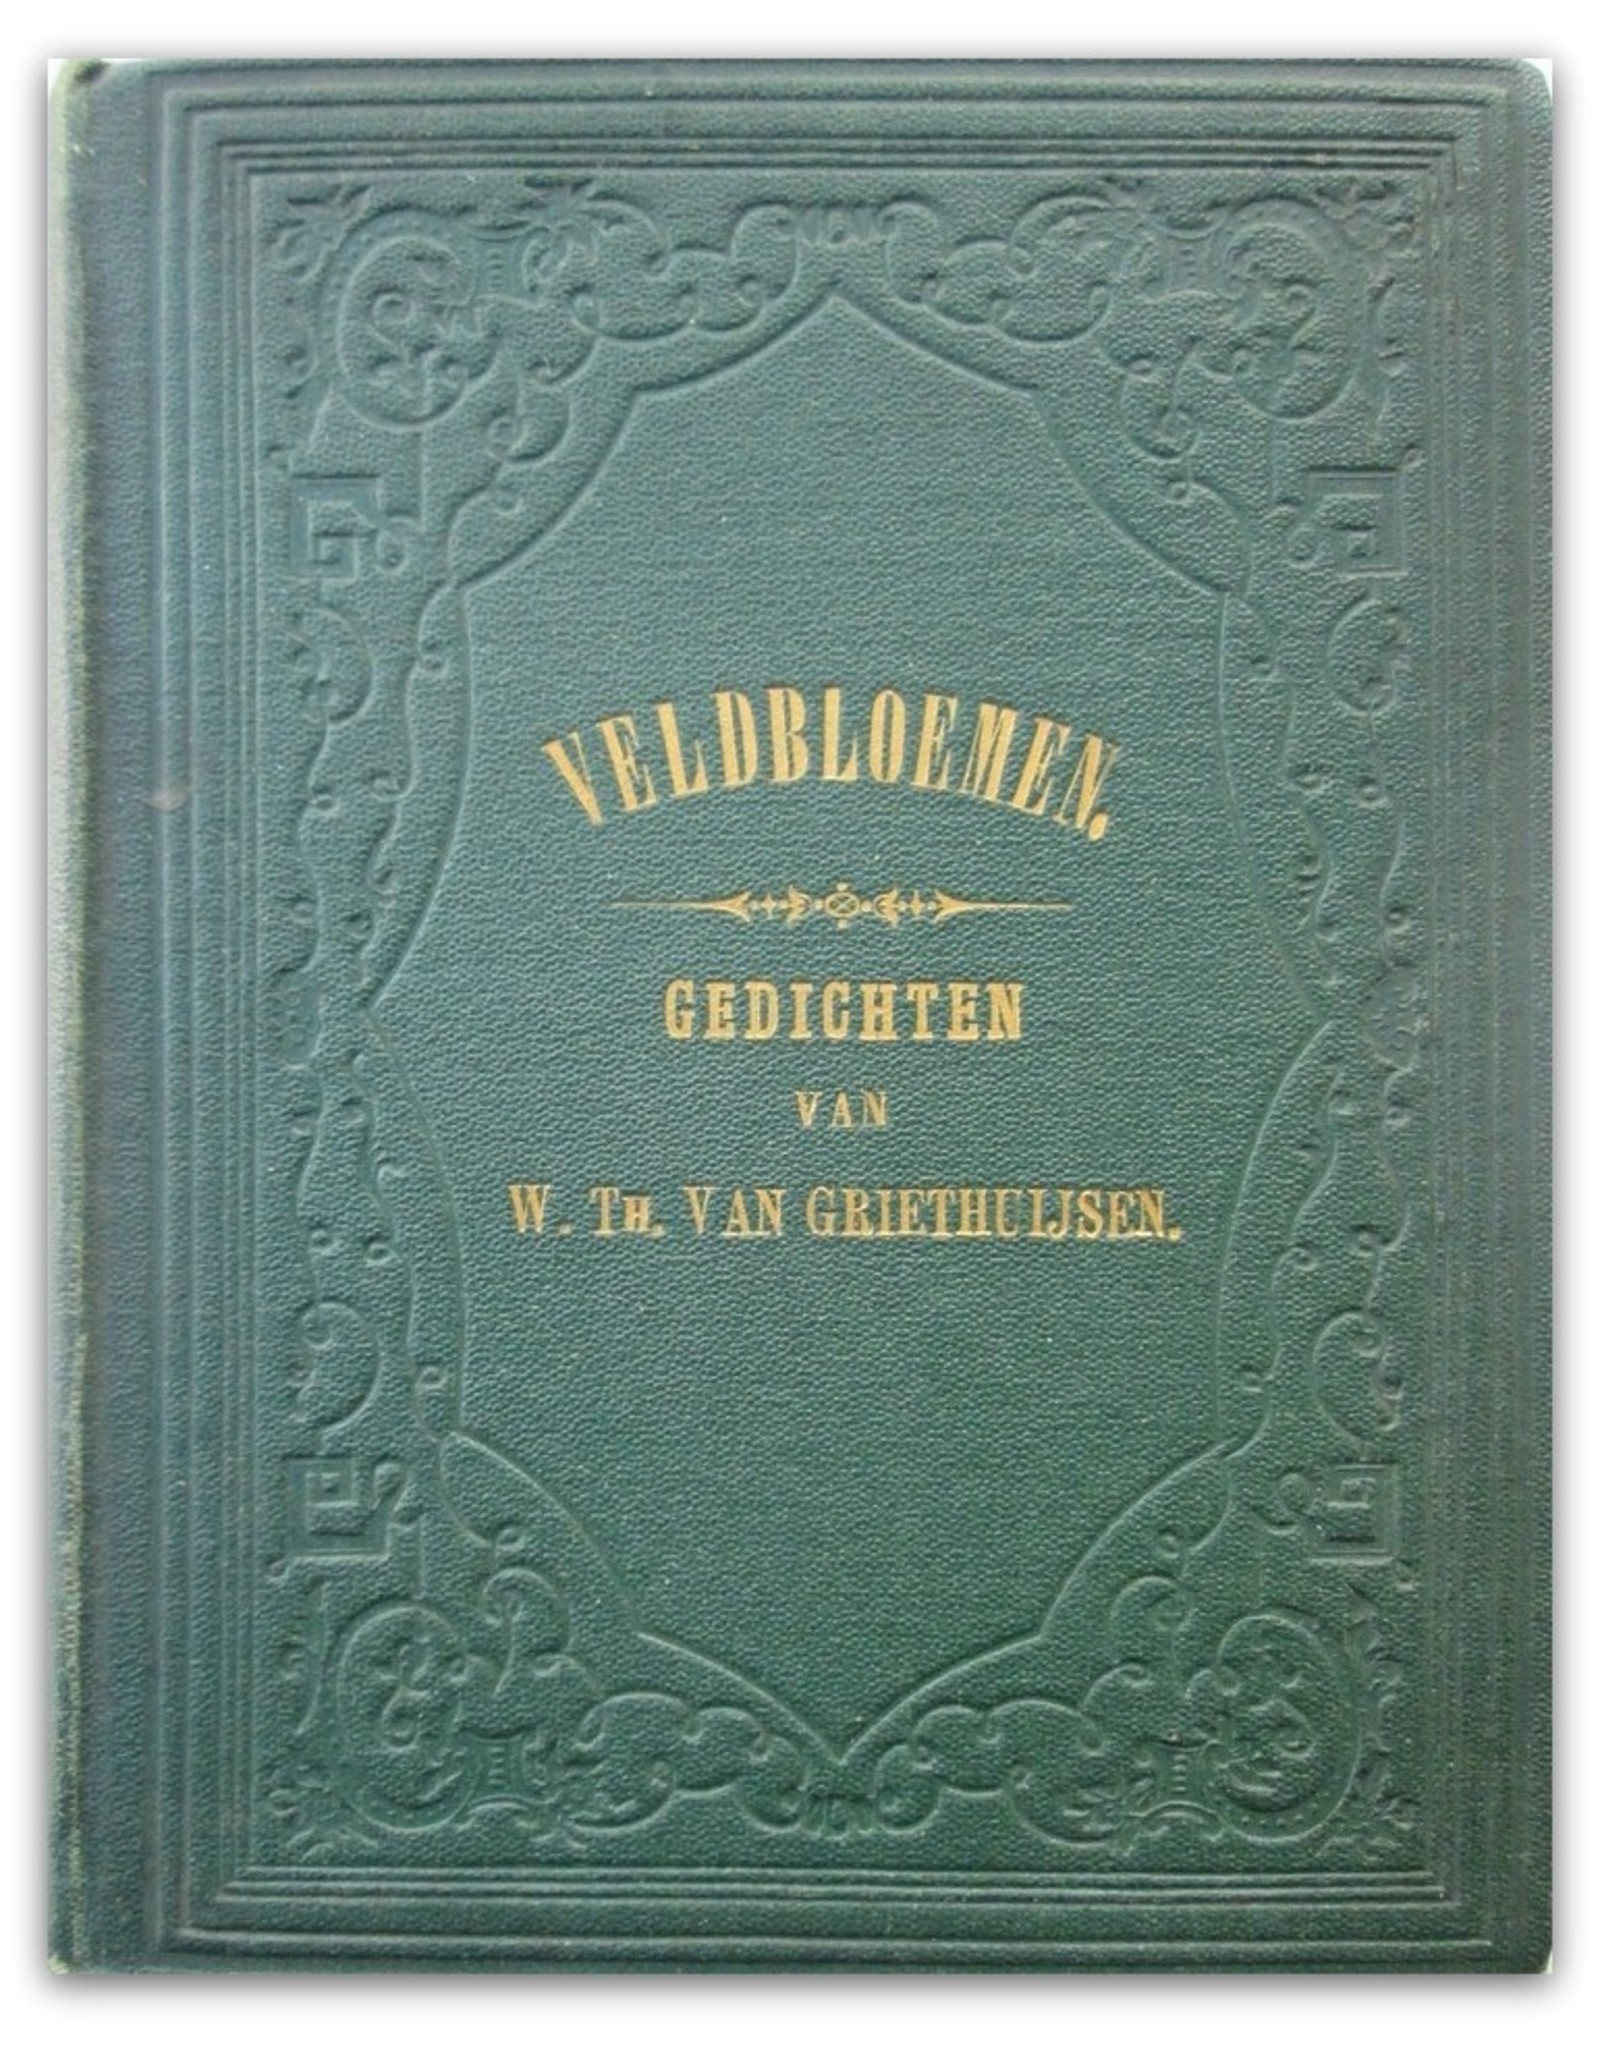 W. Th. van Griethuijsen - Veldbloemen. Gedichten [...]. Tweede vermeerderde druk